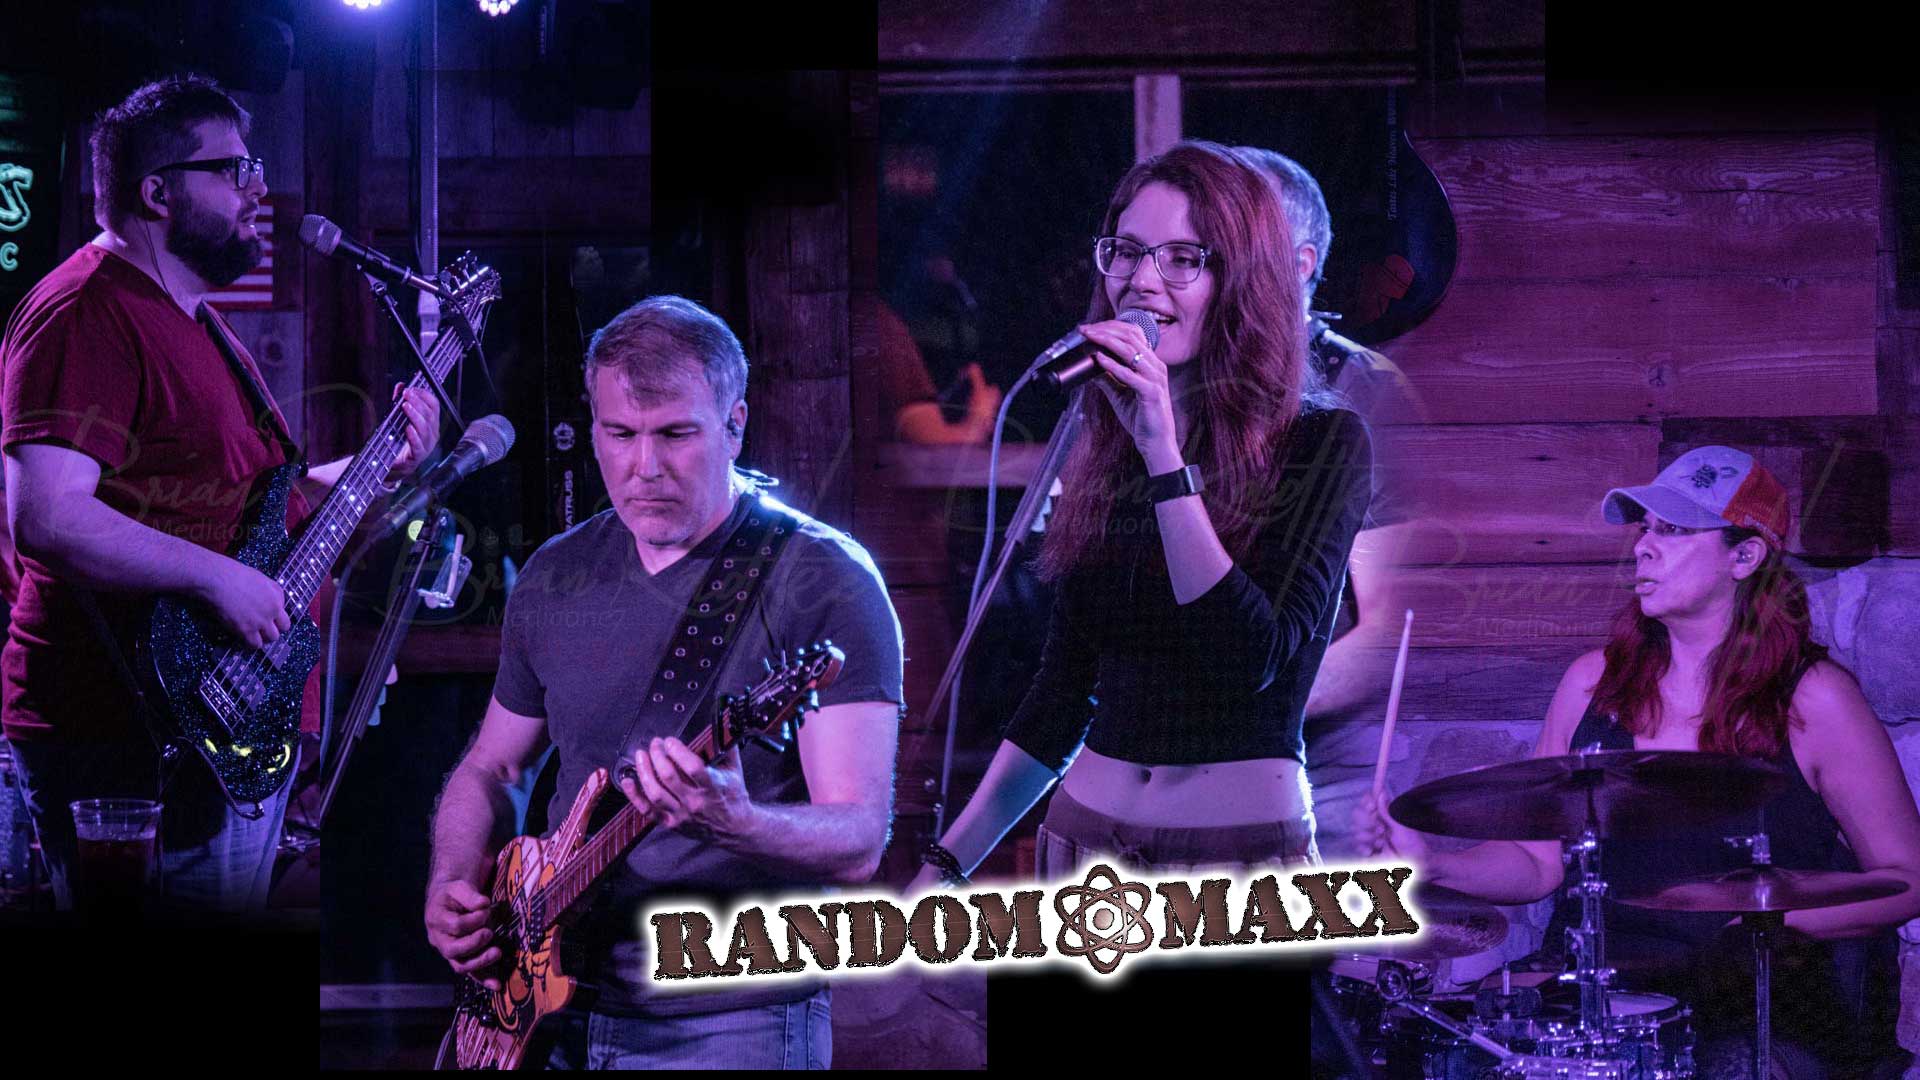 Random Maxx Band at Maloney's